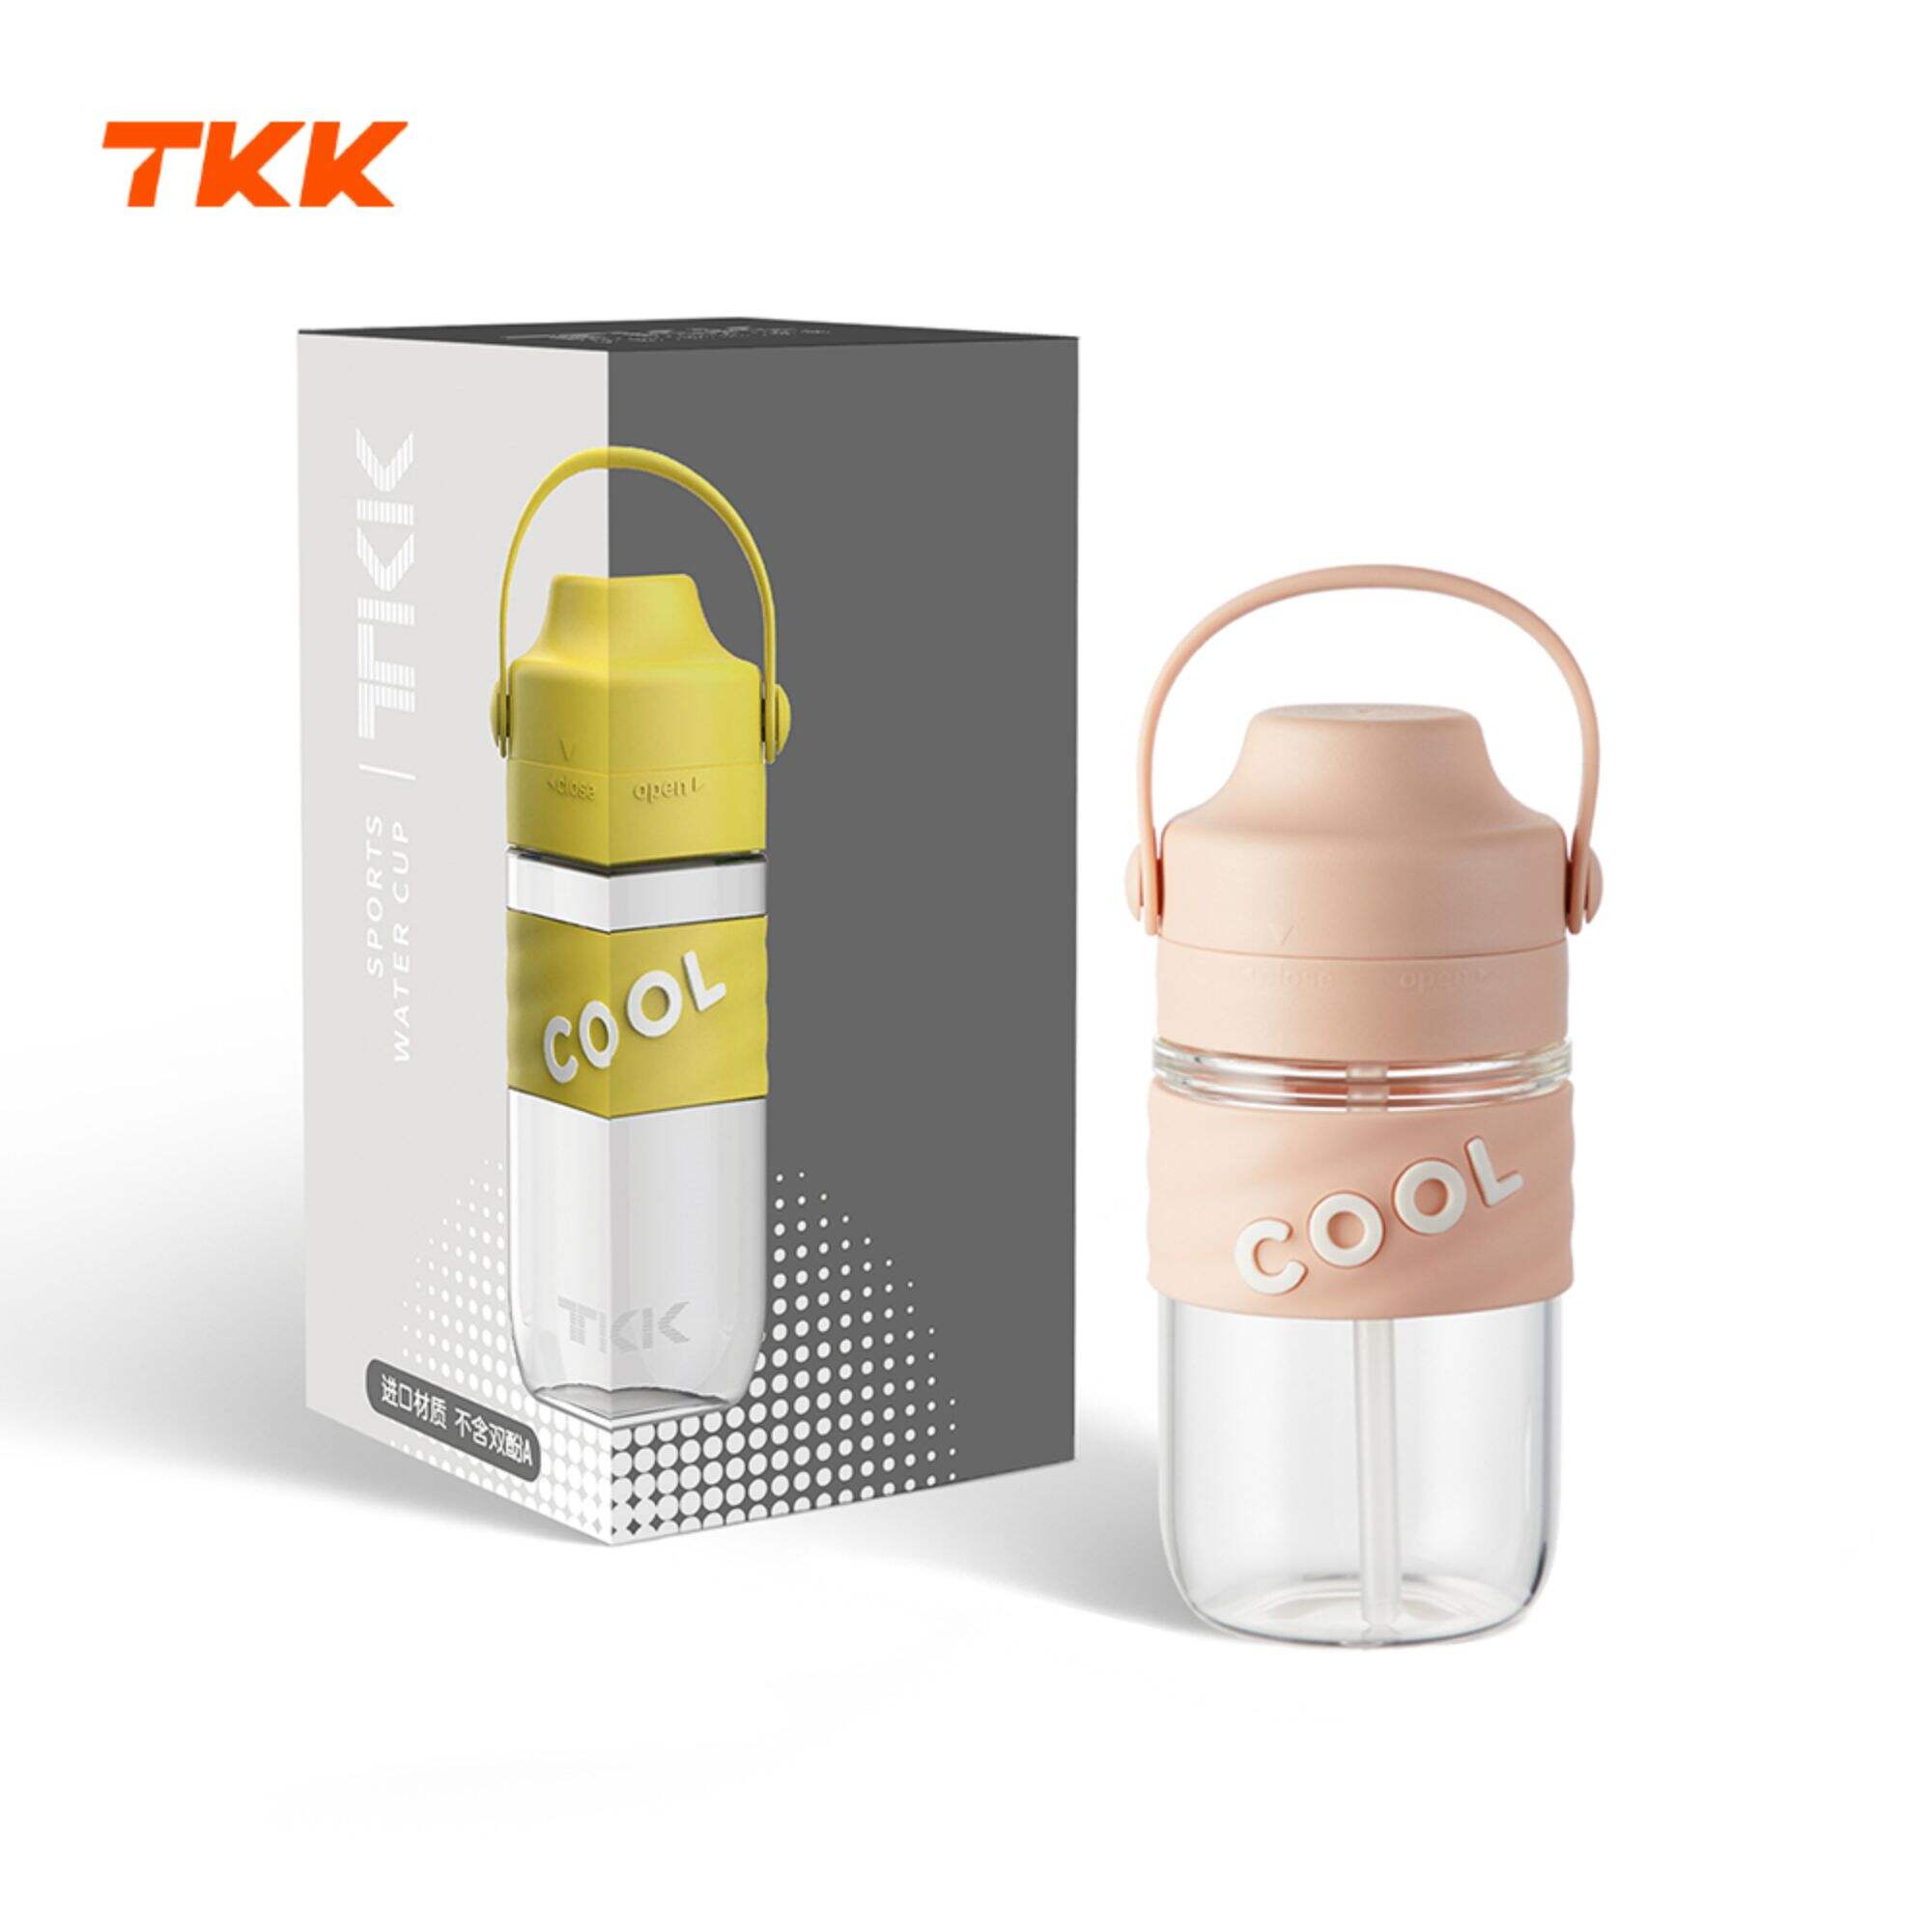 TKK 18oz/500ml Water Bottle with Straw & Carry Handle, Leak-proof Tritan BPA Free Sports Water Bottles for School Kids Girls & Boys